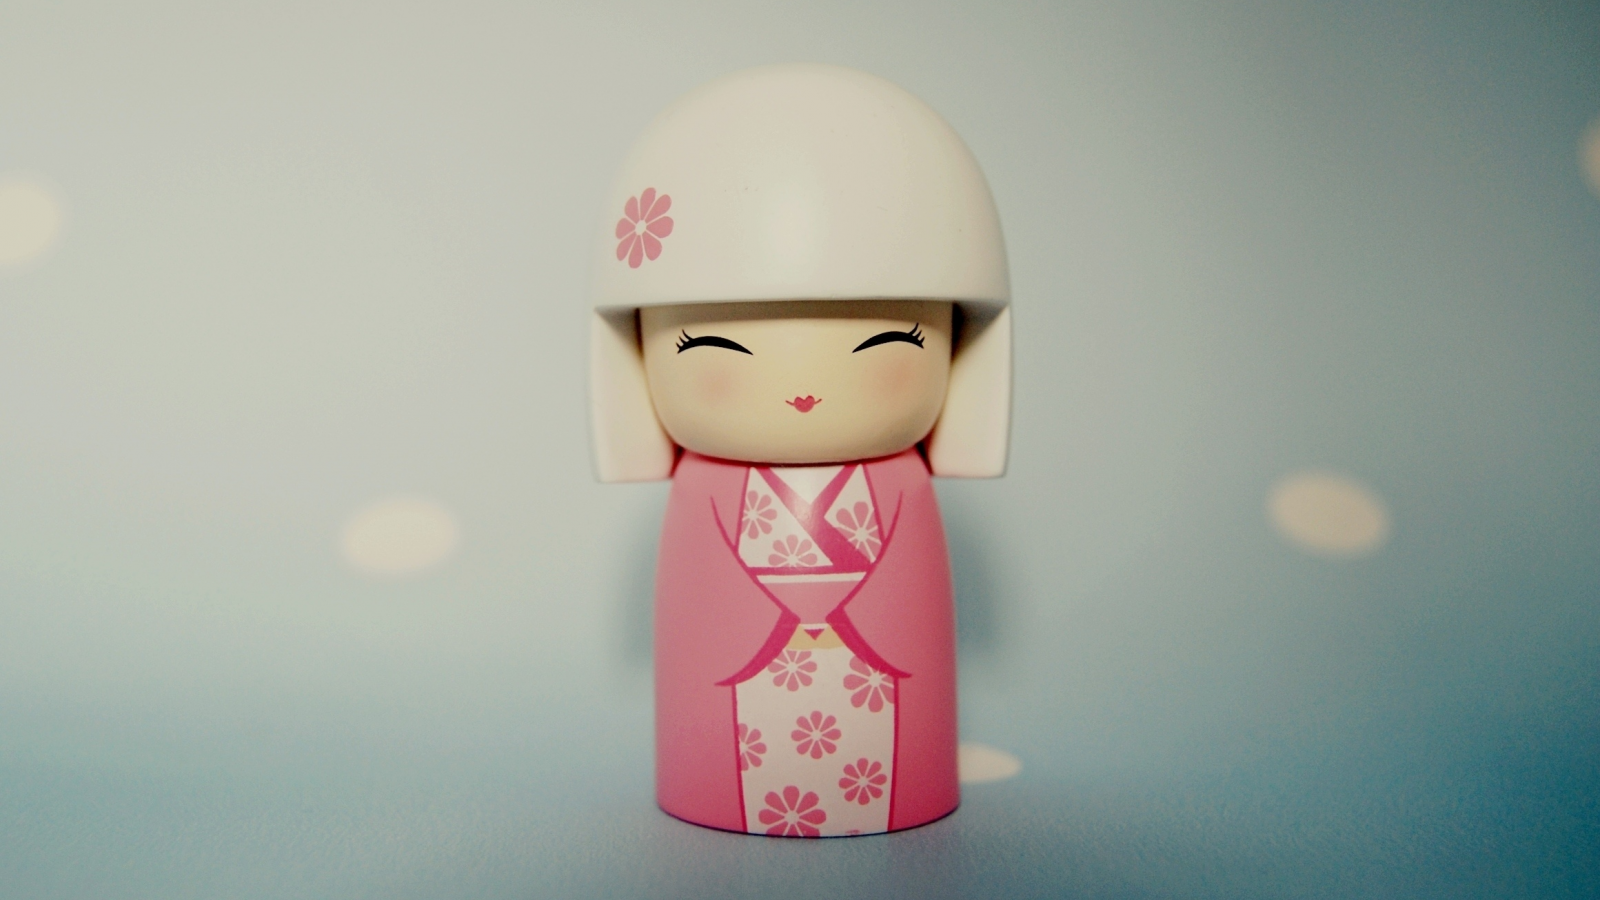 кимоно, макро, японка, картинки, девочка, игрушка, настроение, wallpapers, kayo, фото, улыбка, фигурка, фон, обои